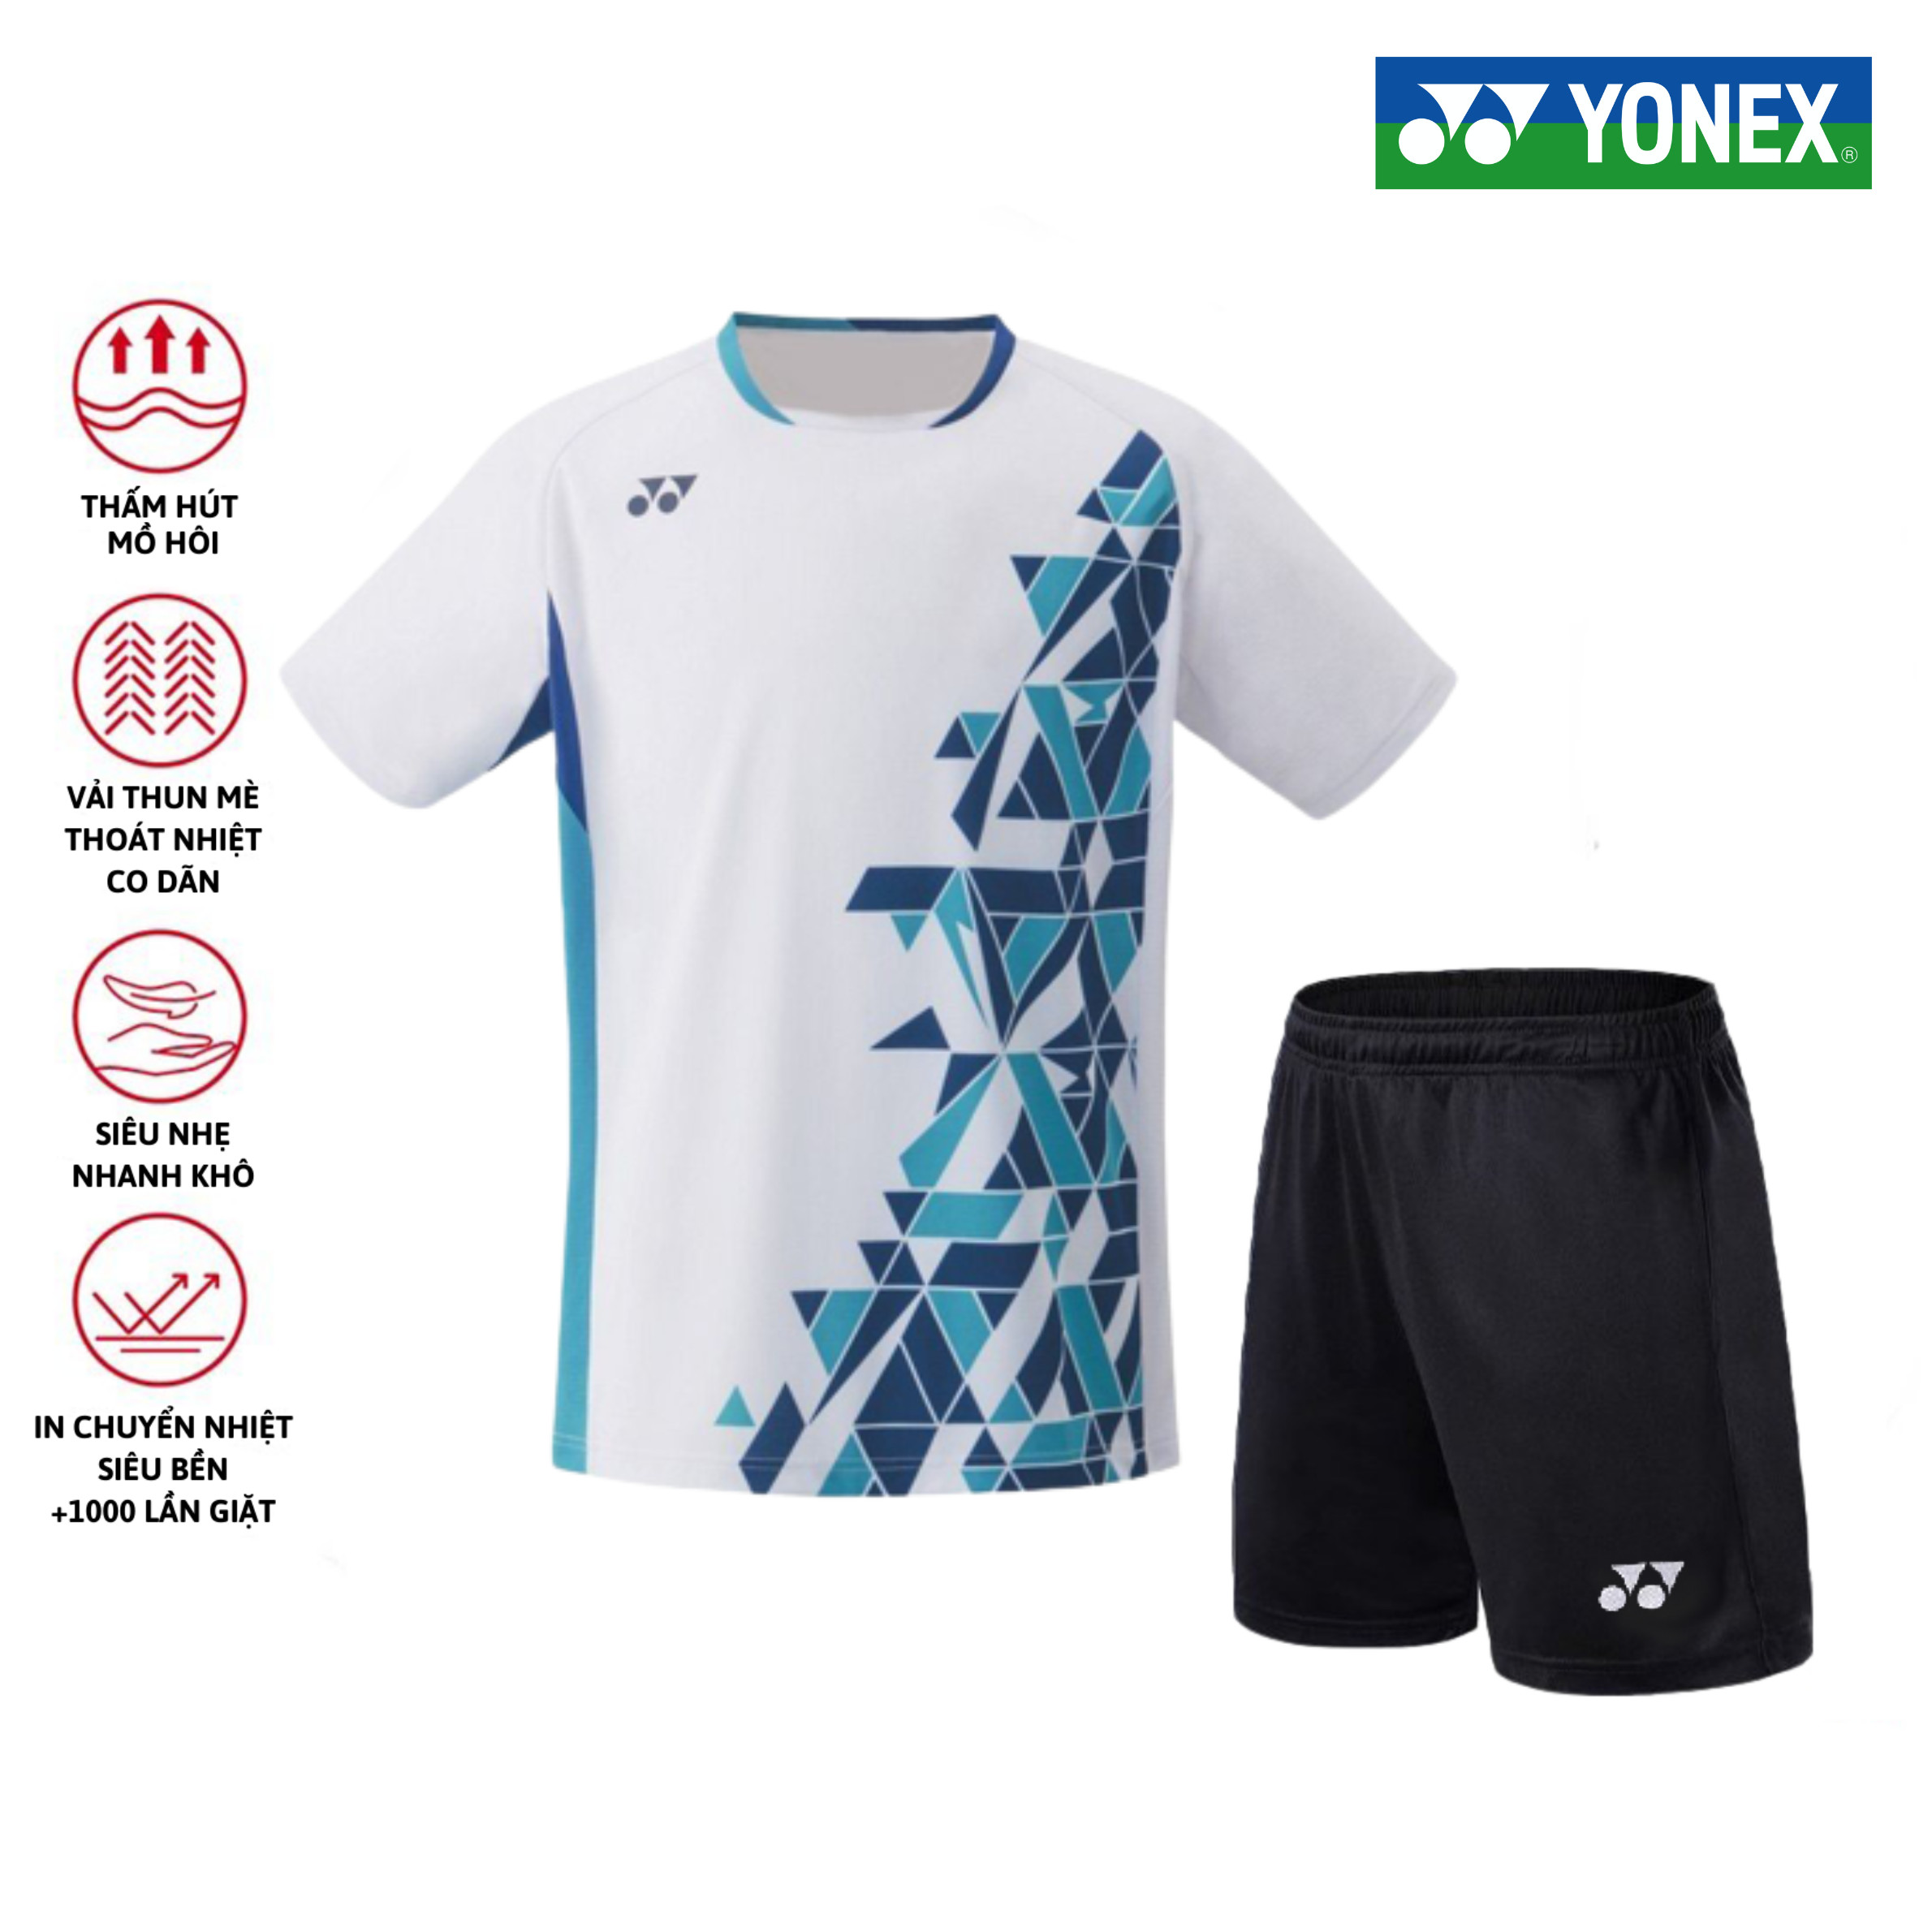 Áo cầu lông, quần cầu lông Yonex chuyên nghiệp mới nhất sử dụng tập luyện và thi đấu cầu lông A218